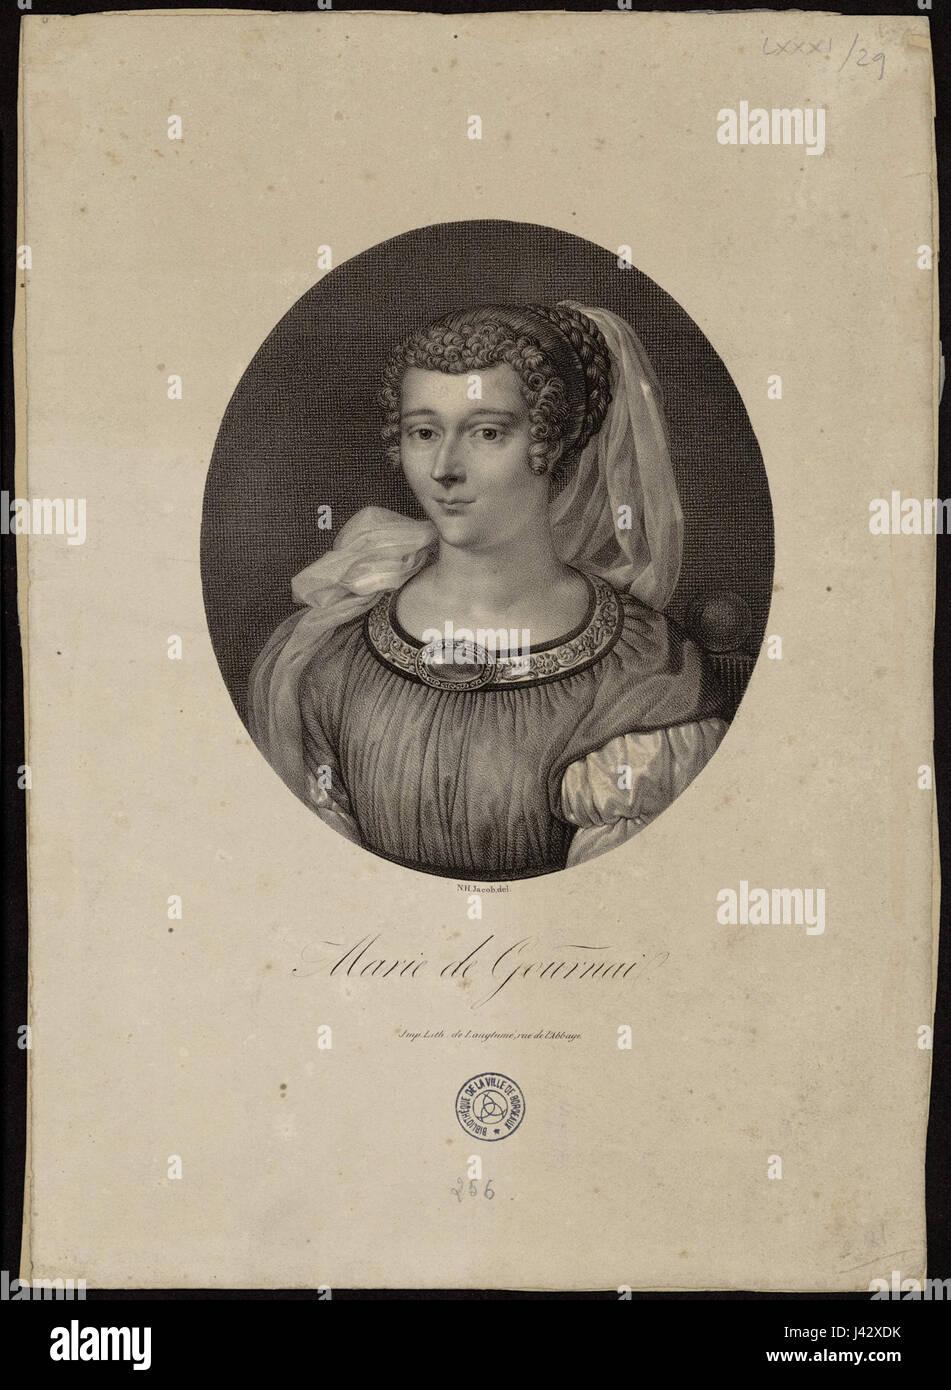 Marie de Gournay 1 Foto de stock